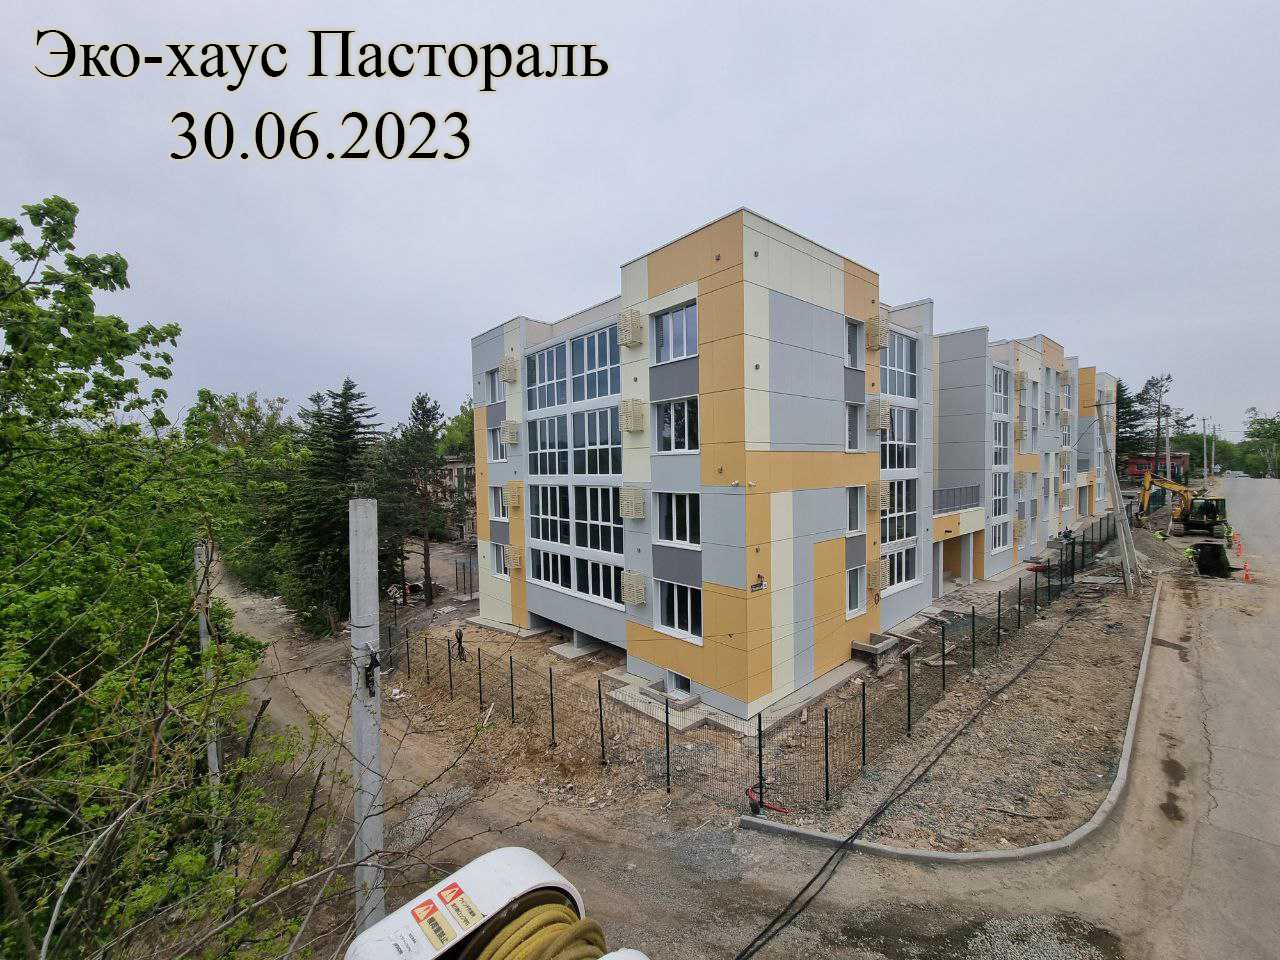 Жилой комплекс Эко-хаус Пастораль, Июнь, 2023